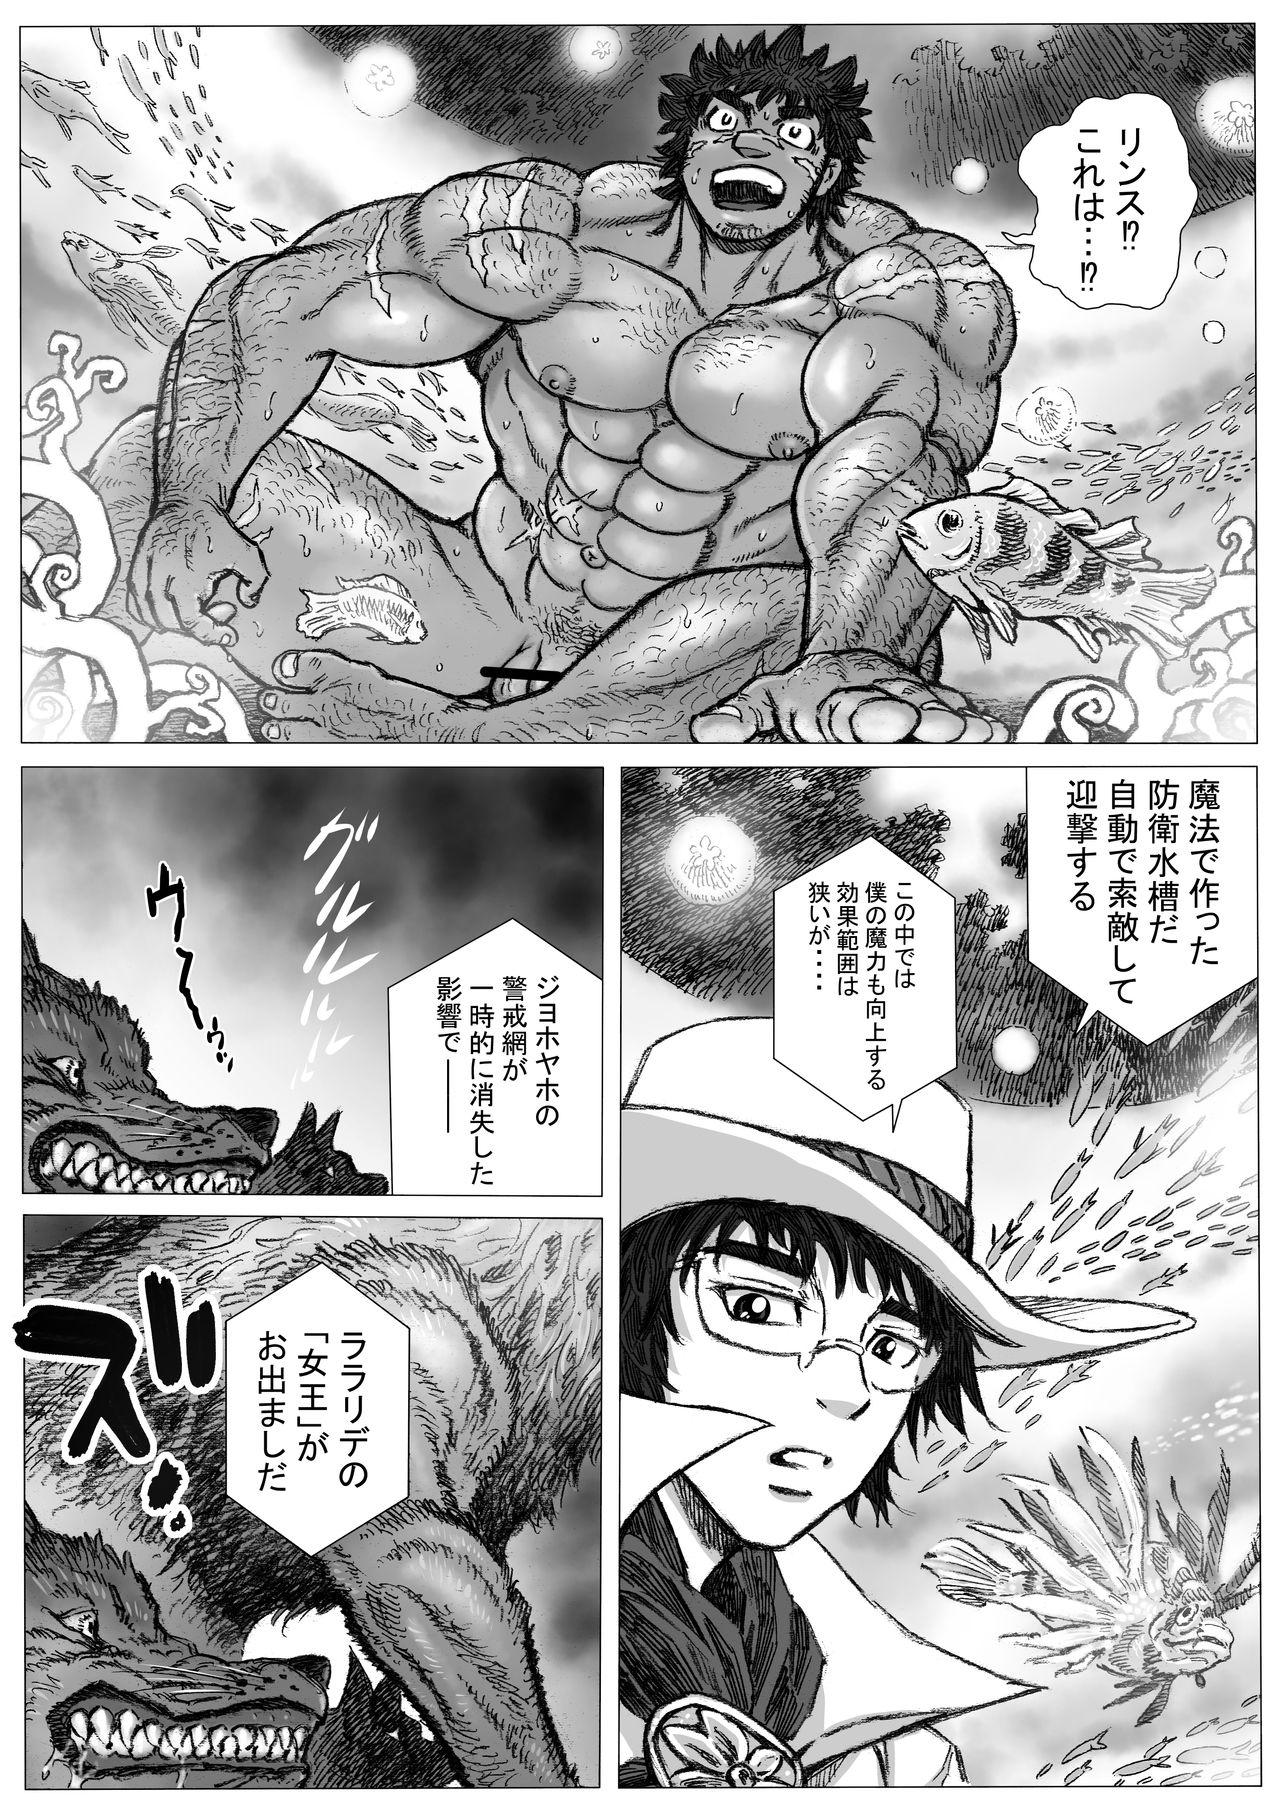 Flogging Hepoe no Kuni kara 15 - saimin ga saiin de gingin no maki Infiel - Page 6